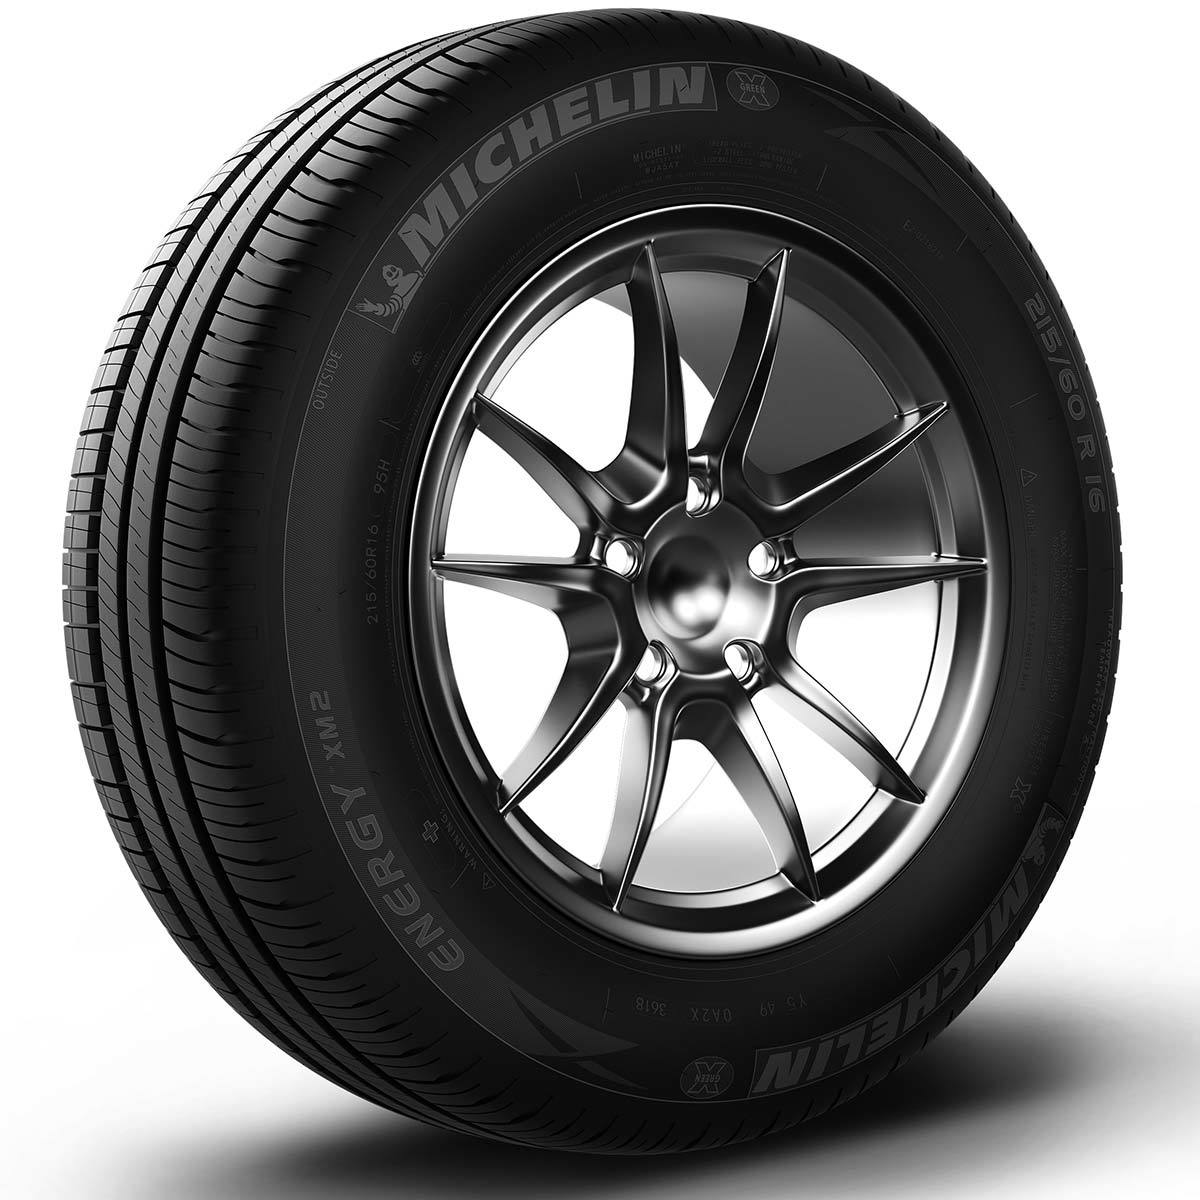 Llanta Michelin Energy XM2+ 205/65R15 99V